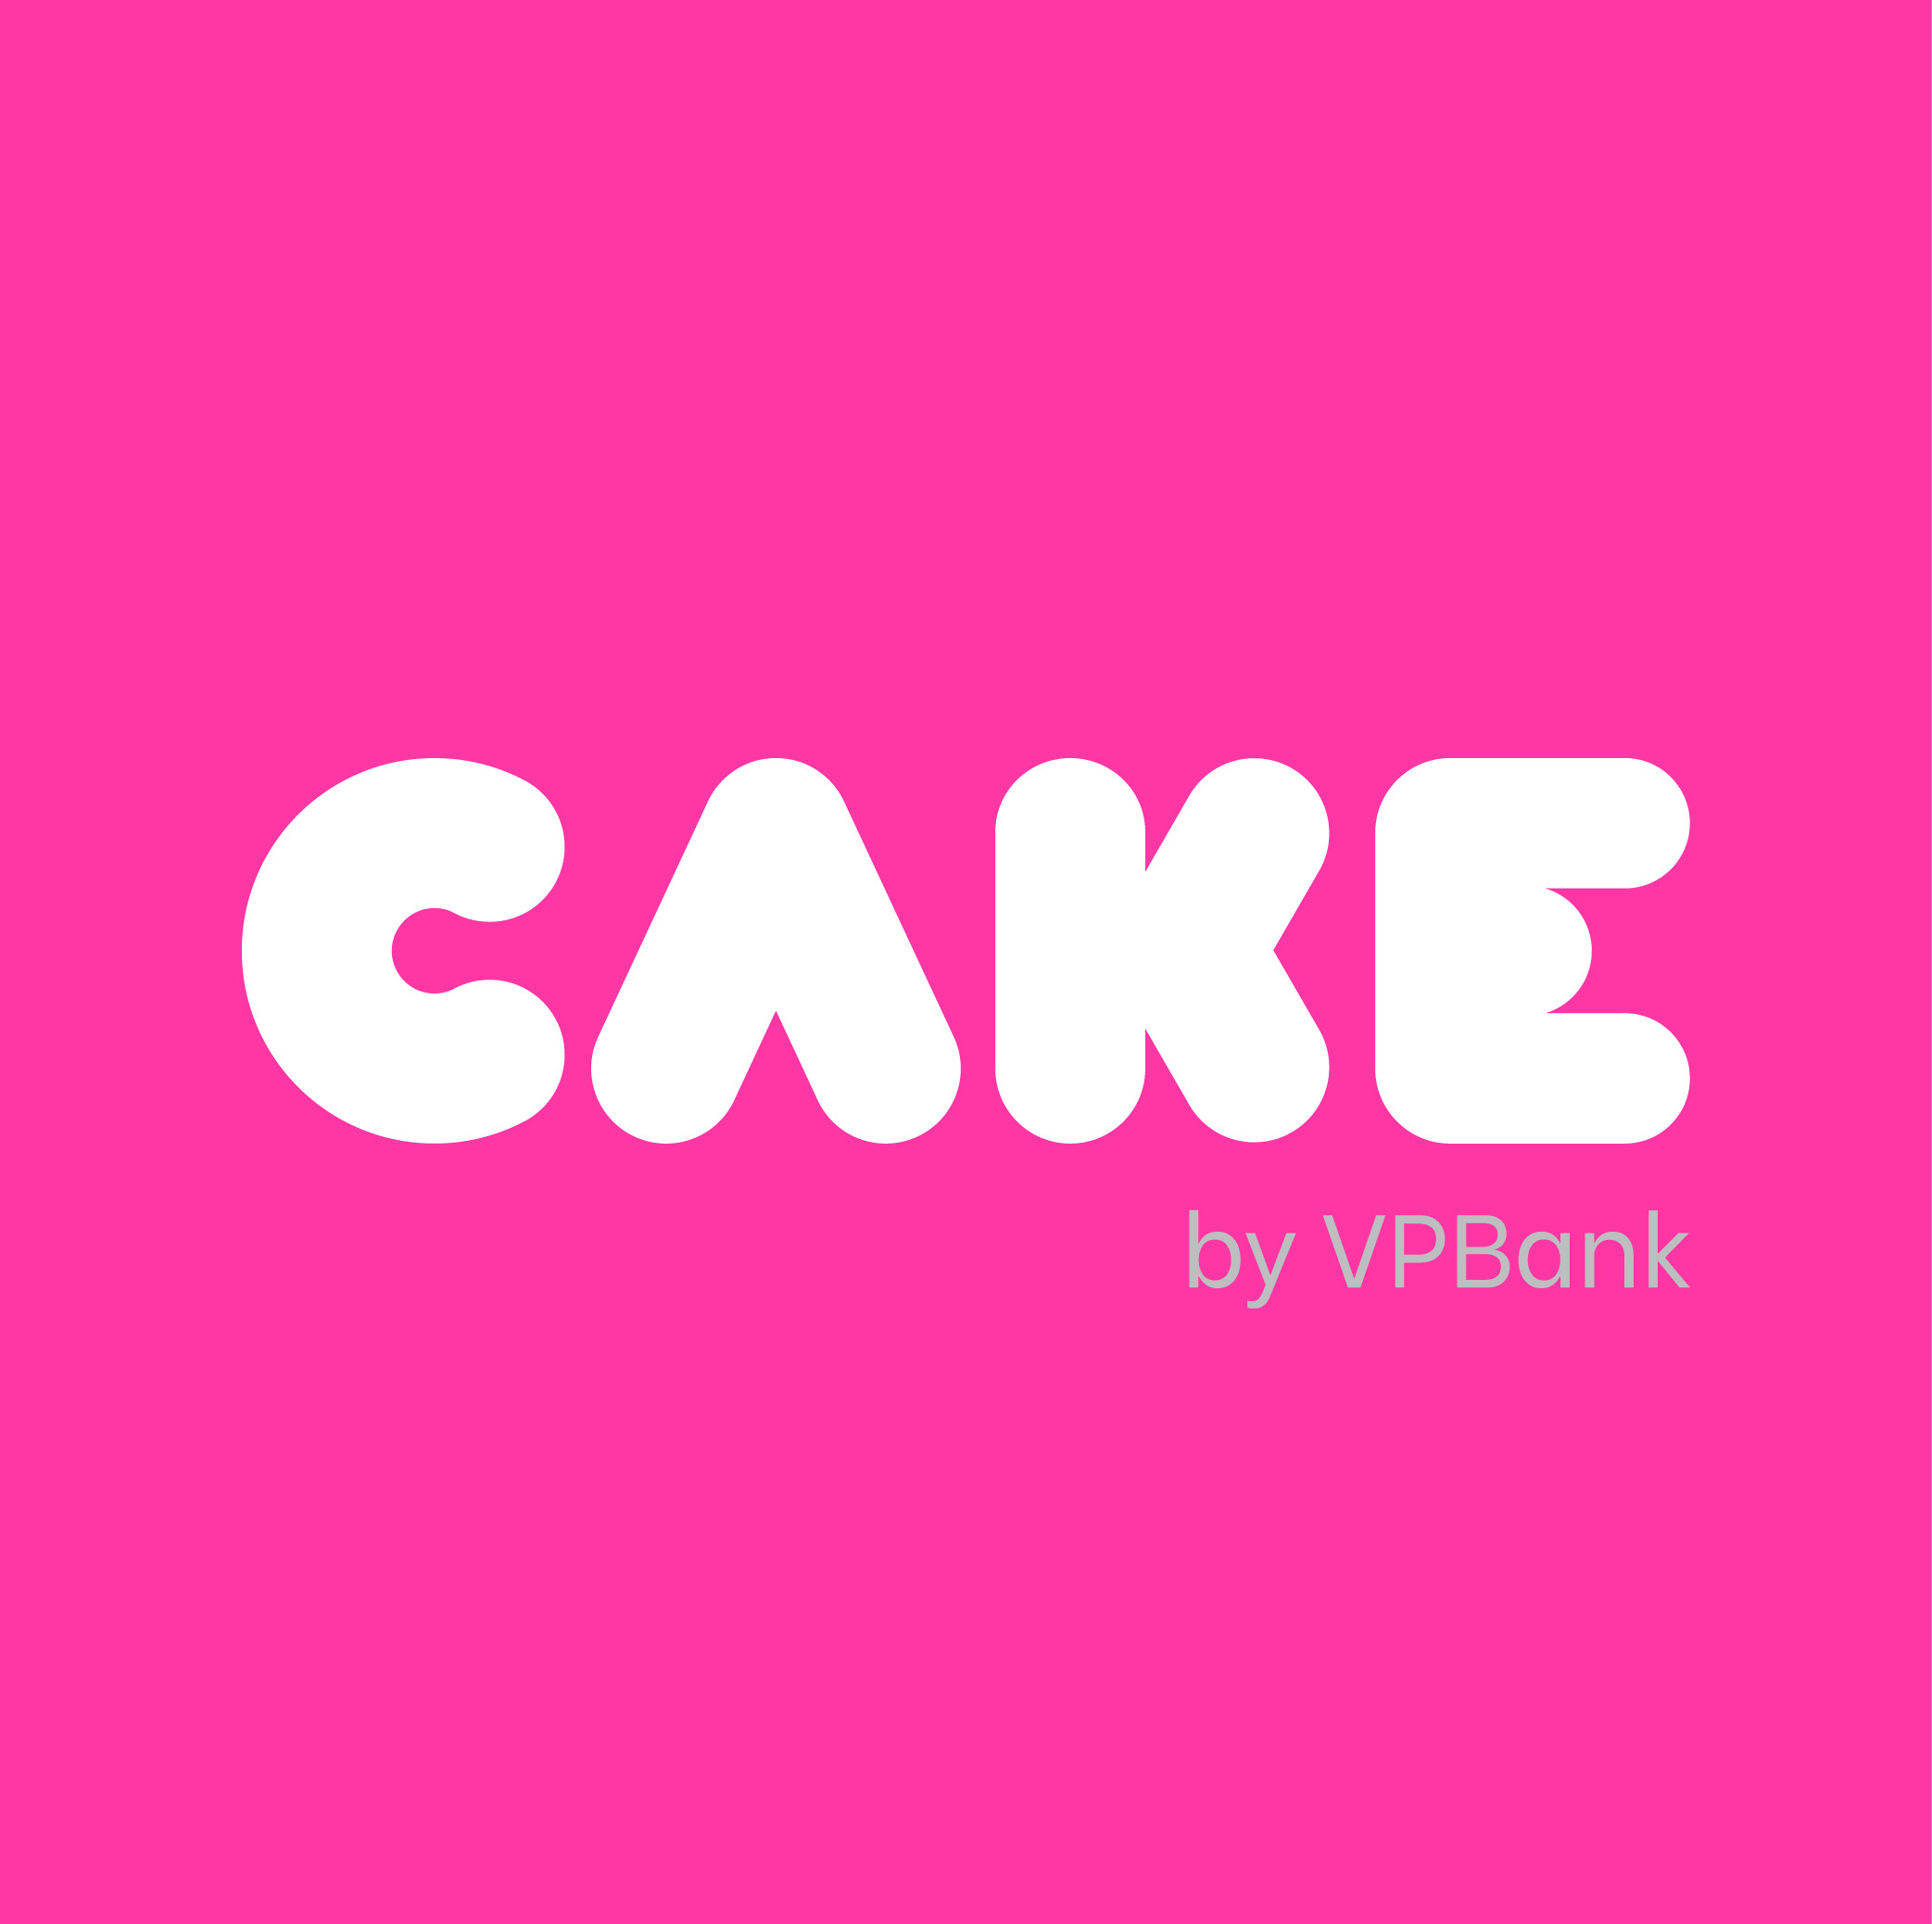 Cake VPBank logo